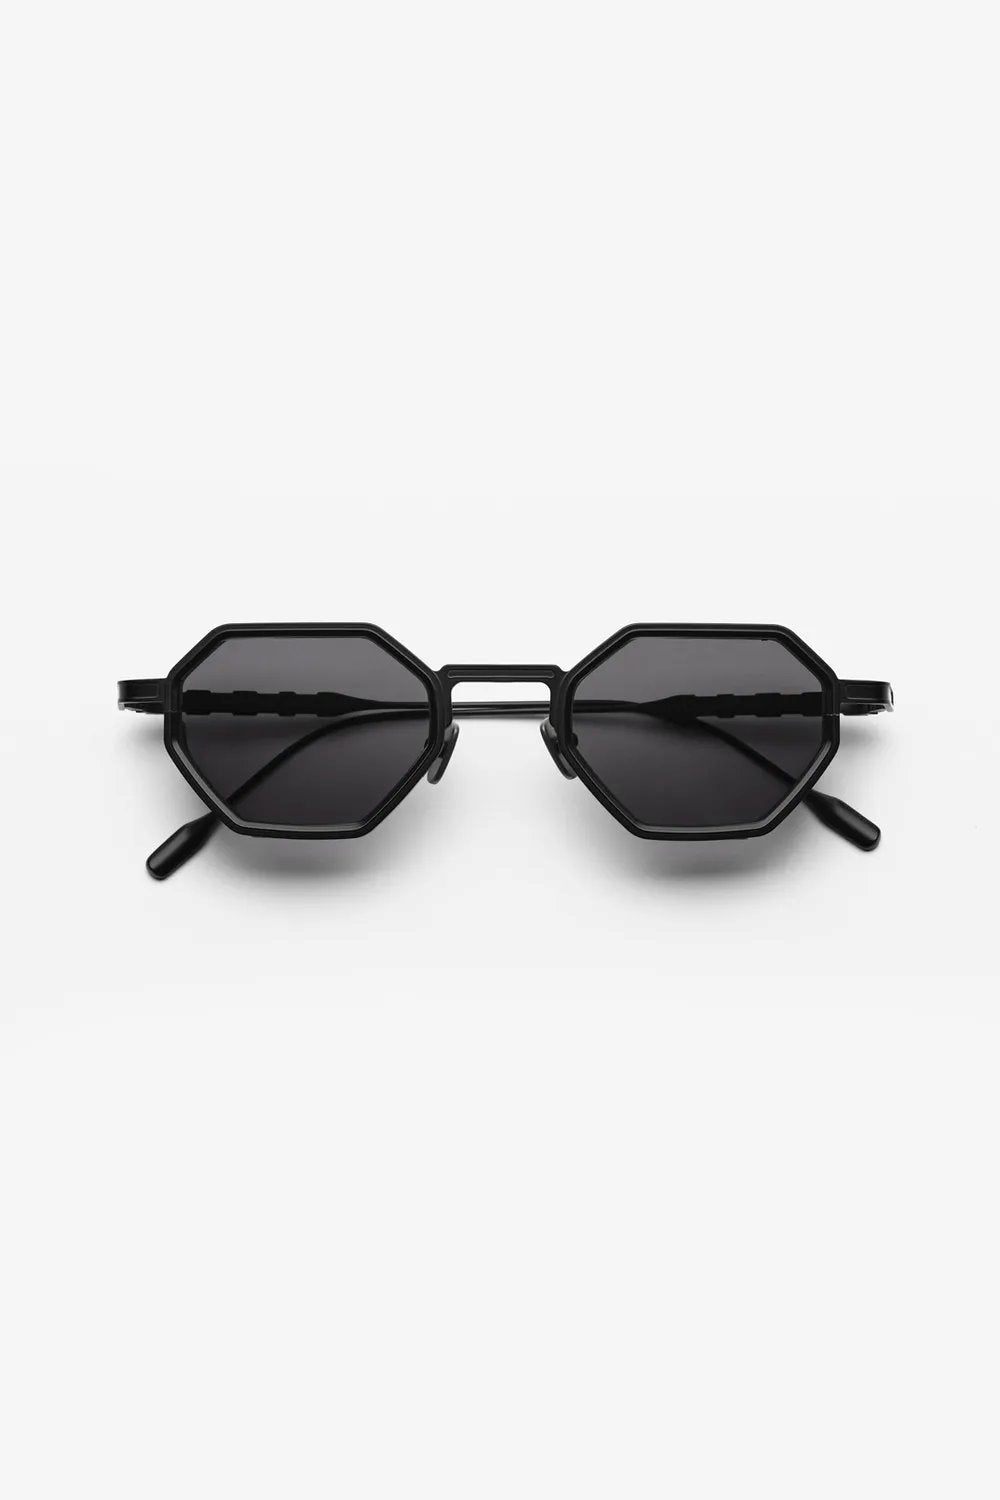 Capote - CC13 Sunglasses Capote Black ONES 